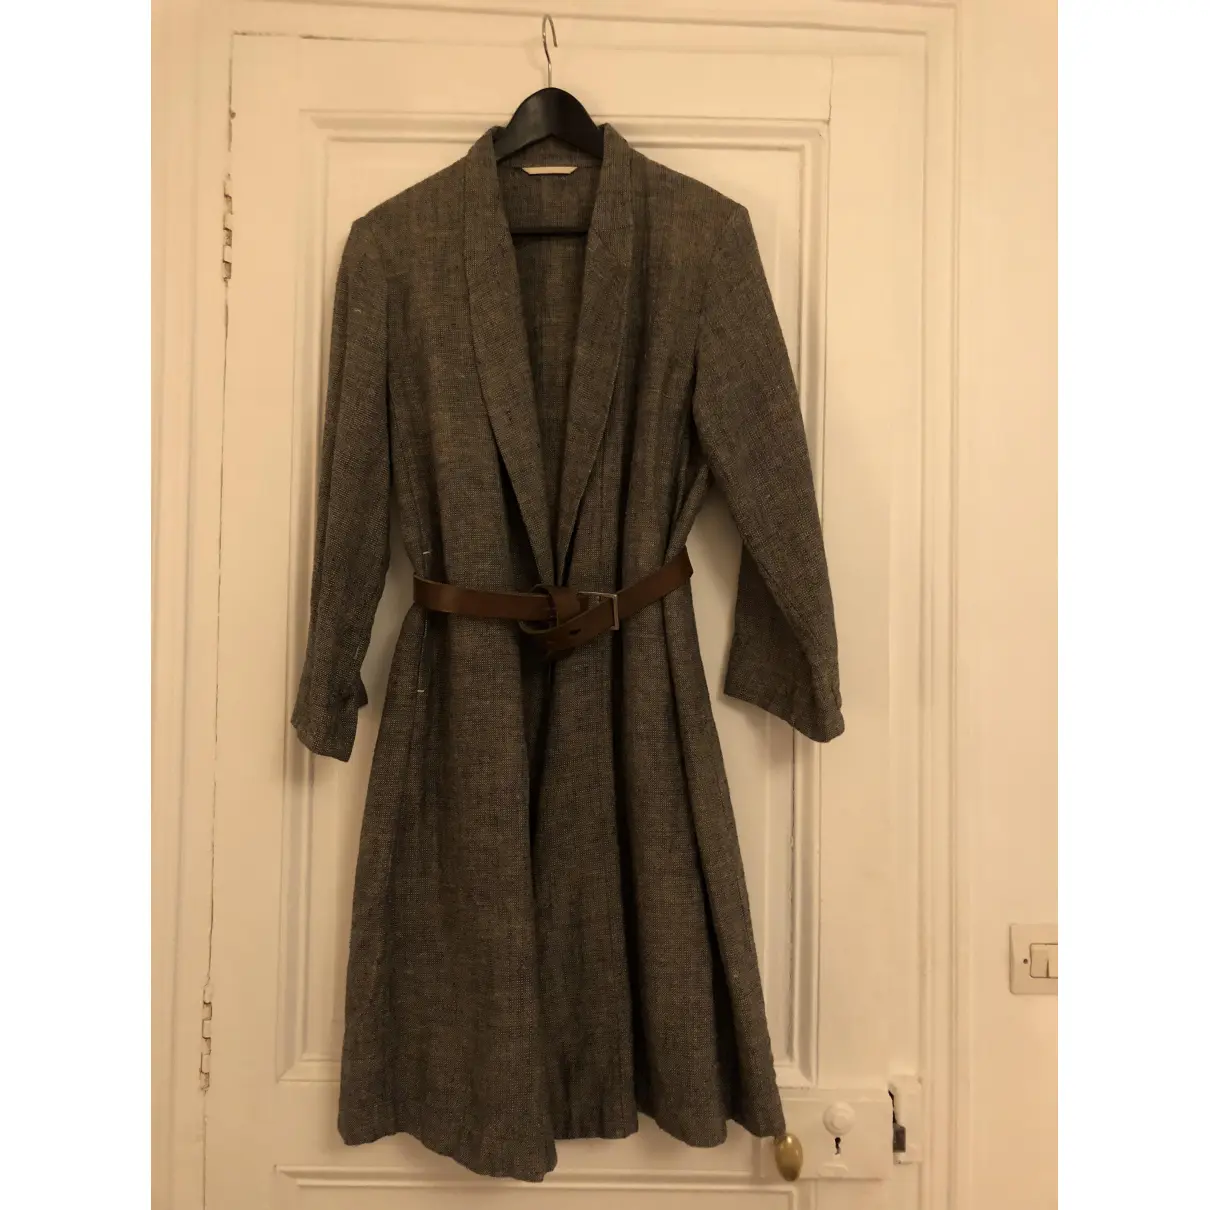 Linen coat 45RPM